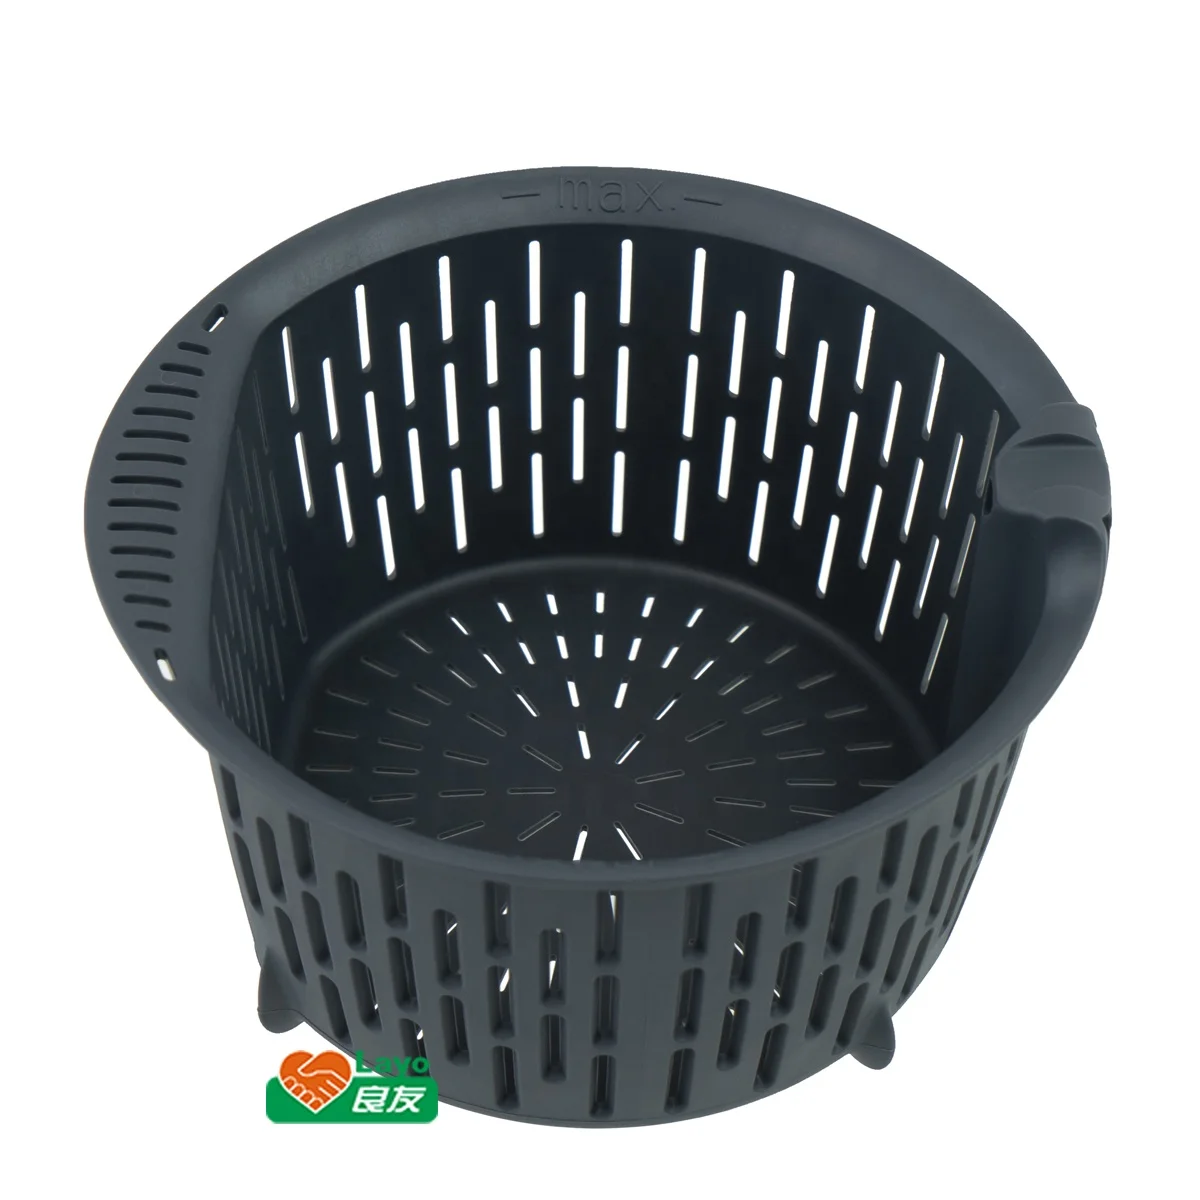 

LAYO Food Grade Vorwerk Bimby Thermomix TM31 TM5 TM6 Multi-Steamer Simmering Basket Net Pot Blender Spare Parts Accessories